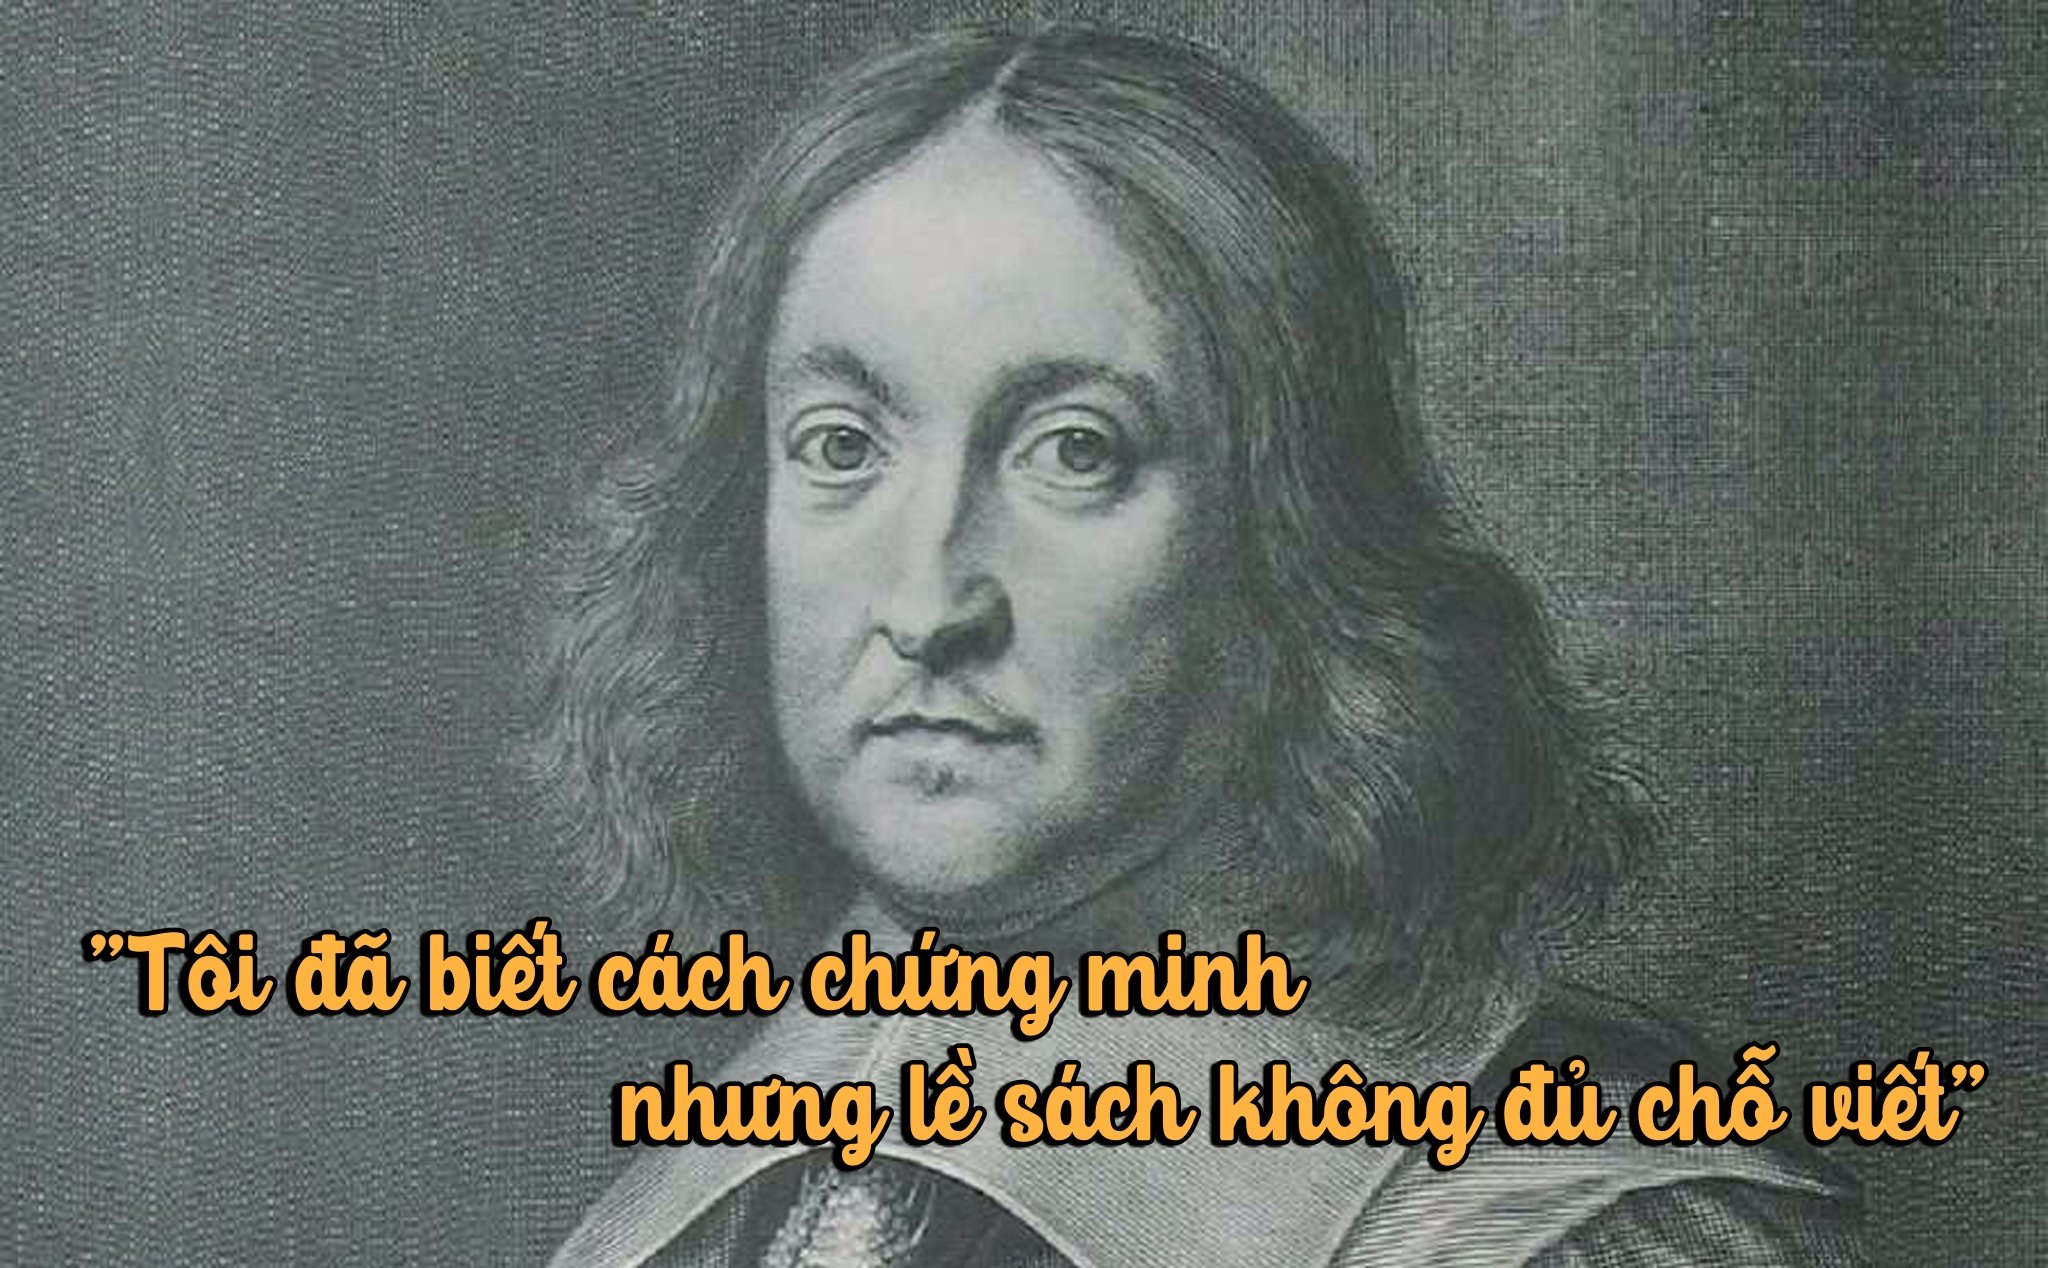 Hành trình giải định lý cuối cùng của Fermat - Bài toán làm đau đầu các nhà toán học suốt 358 năm